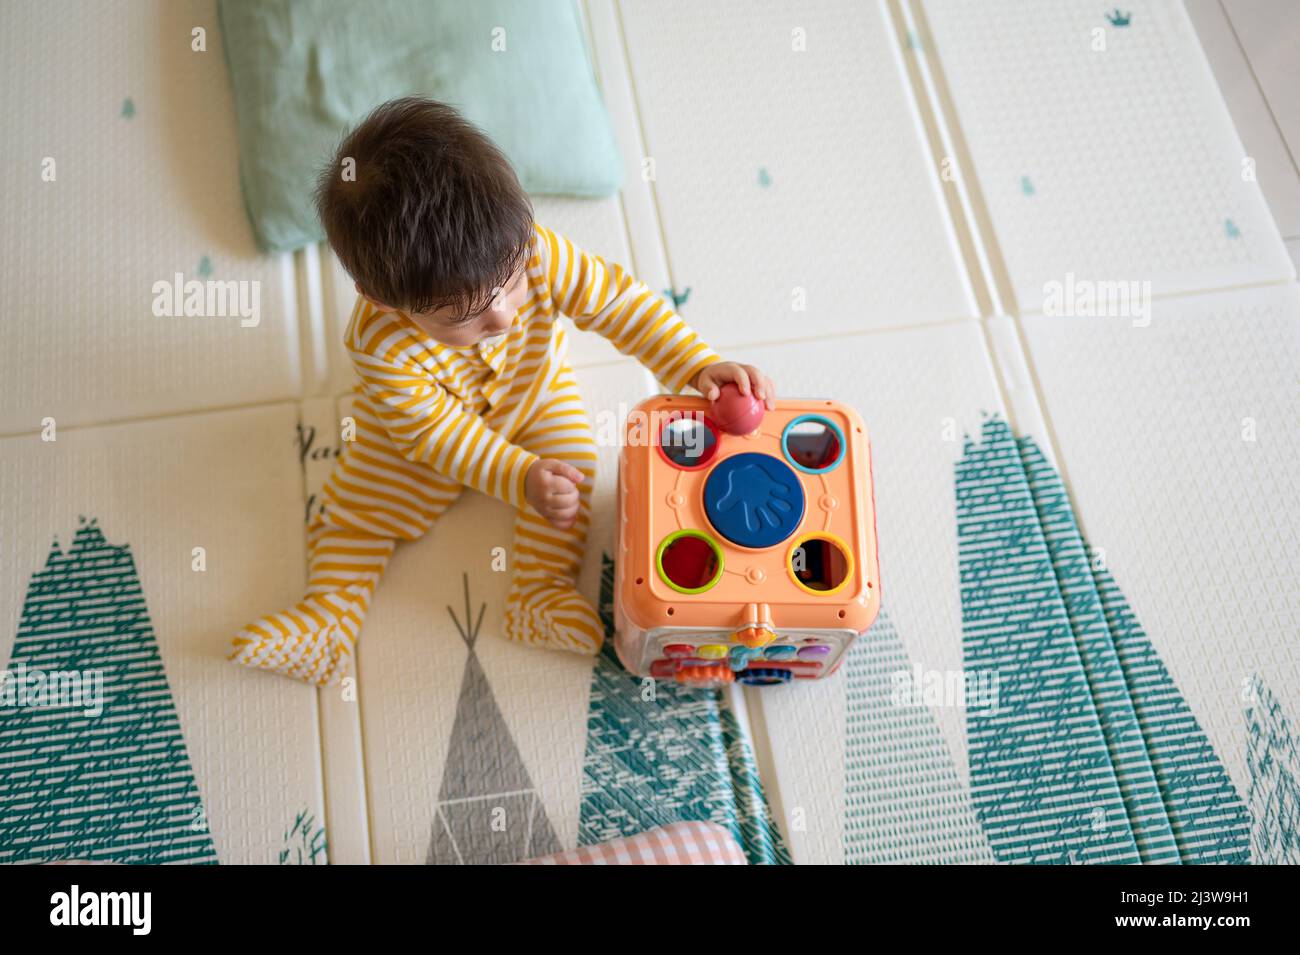 8 meses de edad raza mixta bebé niño jugando con caja de actividad en el dormitorio con pijama amarillo mientras se sienta en el suelo cubierto con un juego de goma Foto de stock